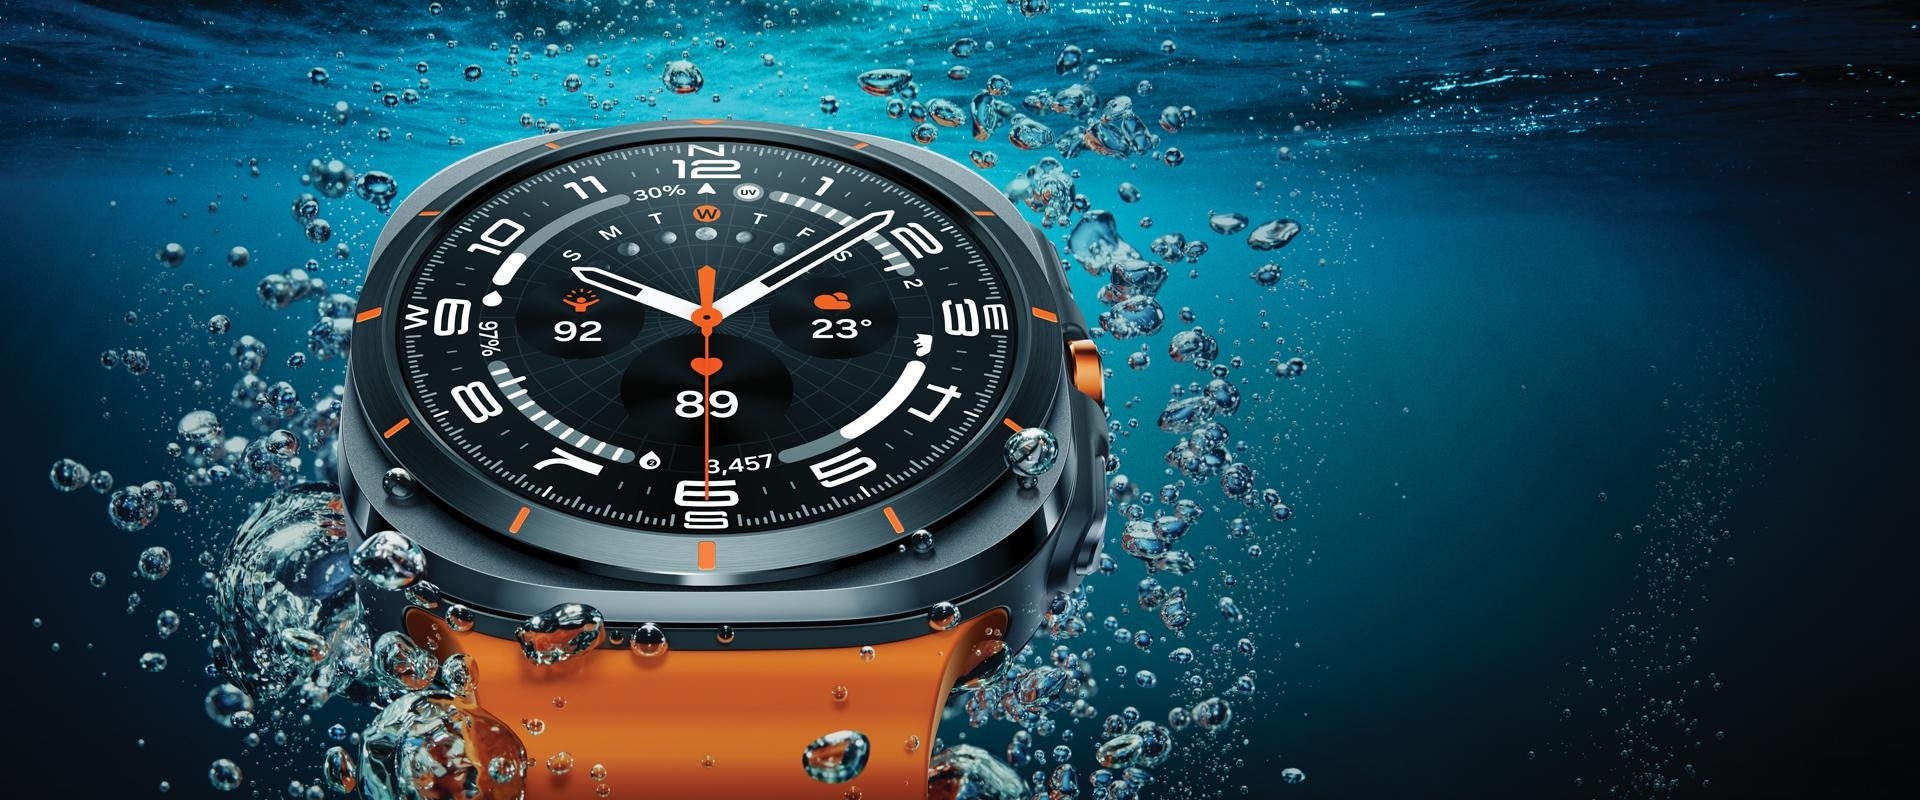 Une Galaxy Watch Ultra est vue en gros plan dans l’eau près de la surface, mettant en valeur son design.